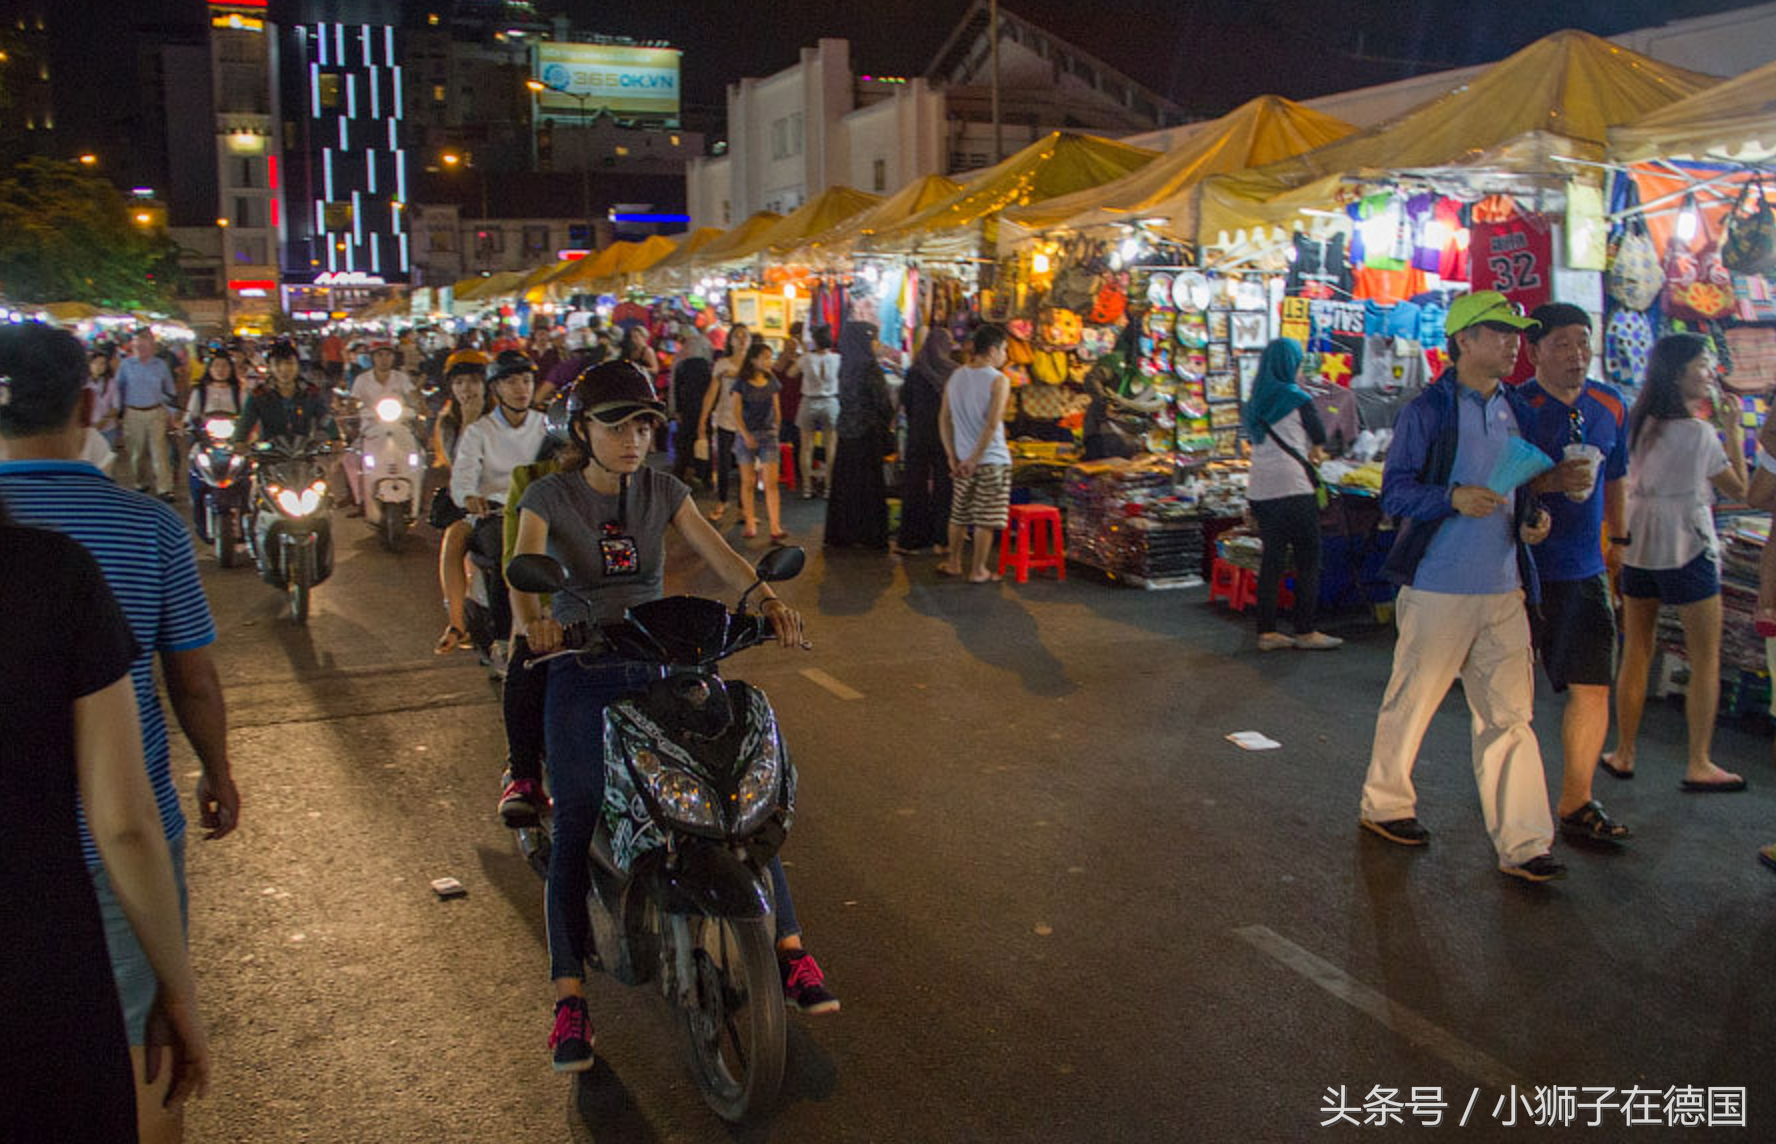 大多数白天逛街一毛不拔的越南人,在夜晚买东西是非常愿意一掷千金